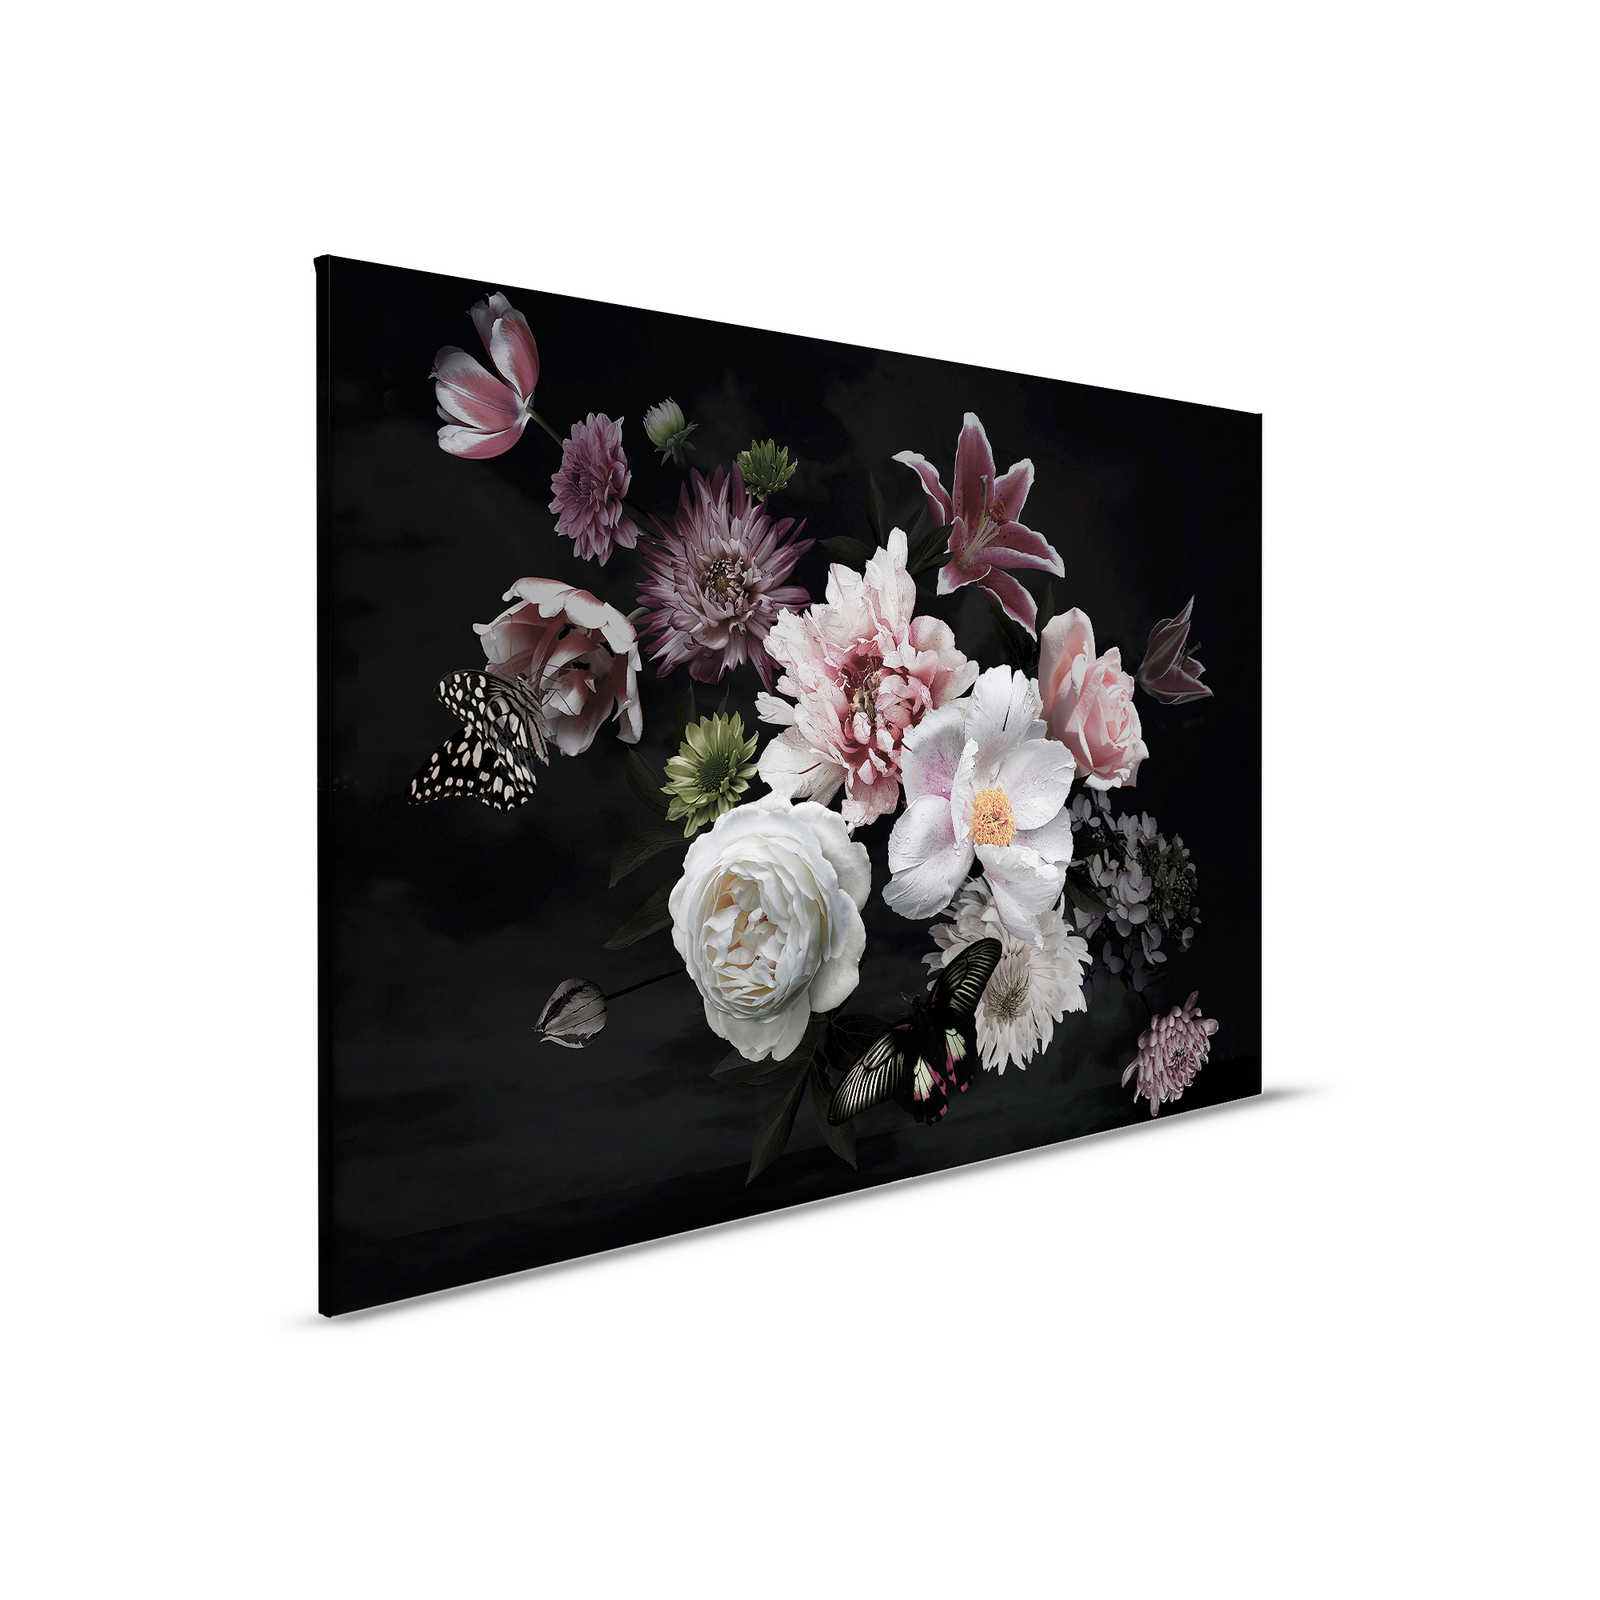 Canvas schilderij diverse bloemen met vlinder - 0,90 m x 0,60 m
